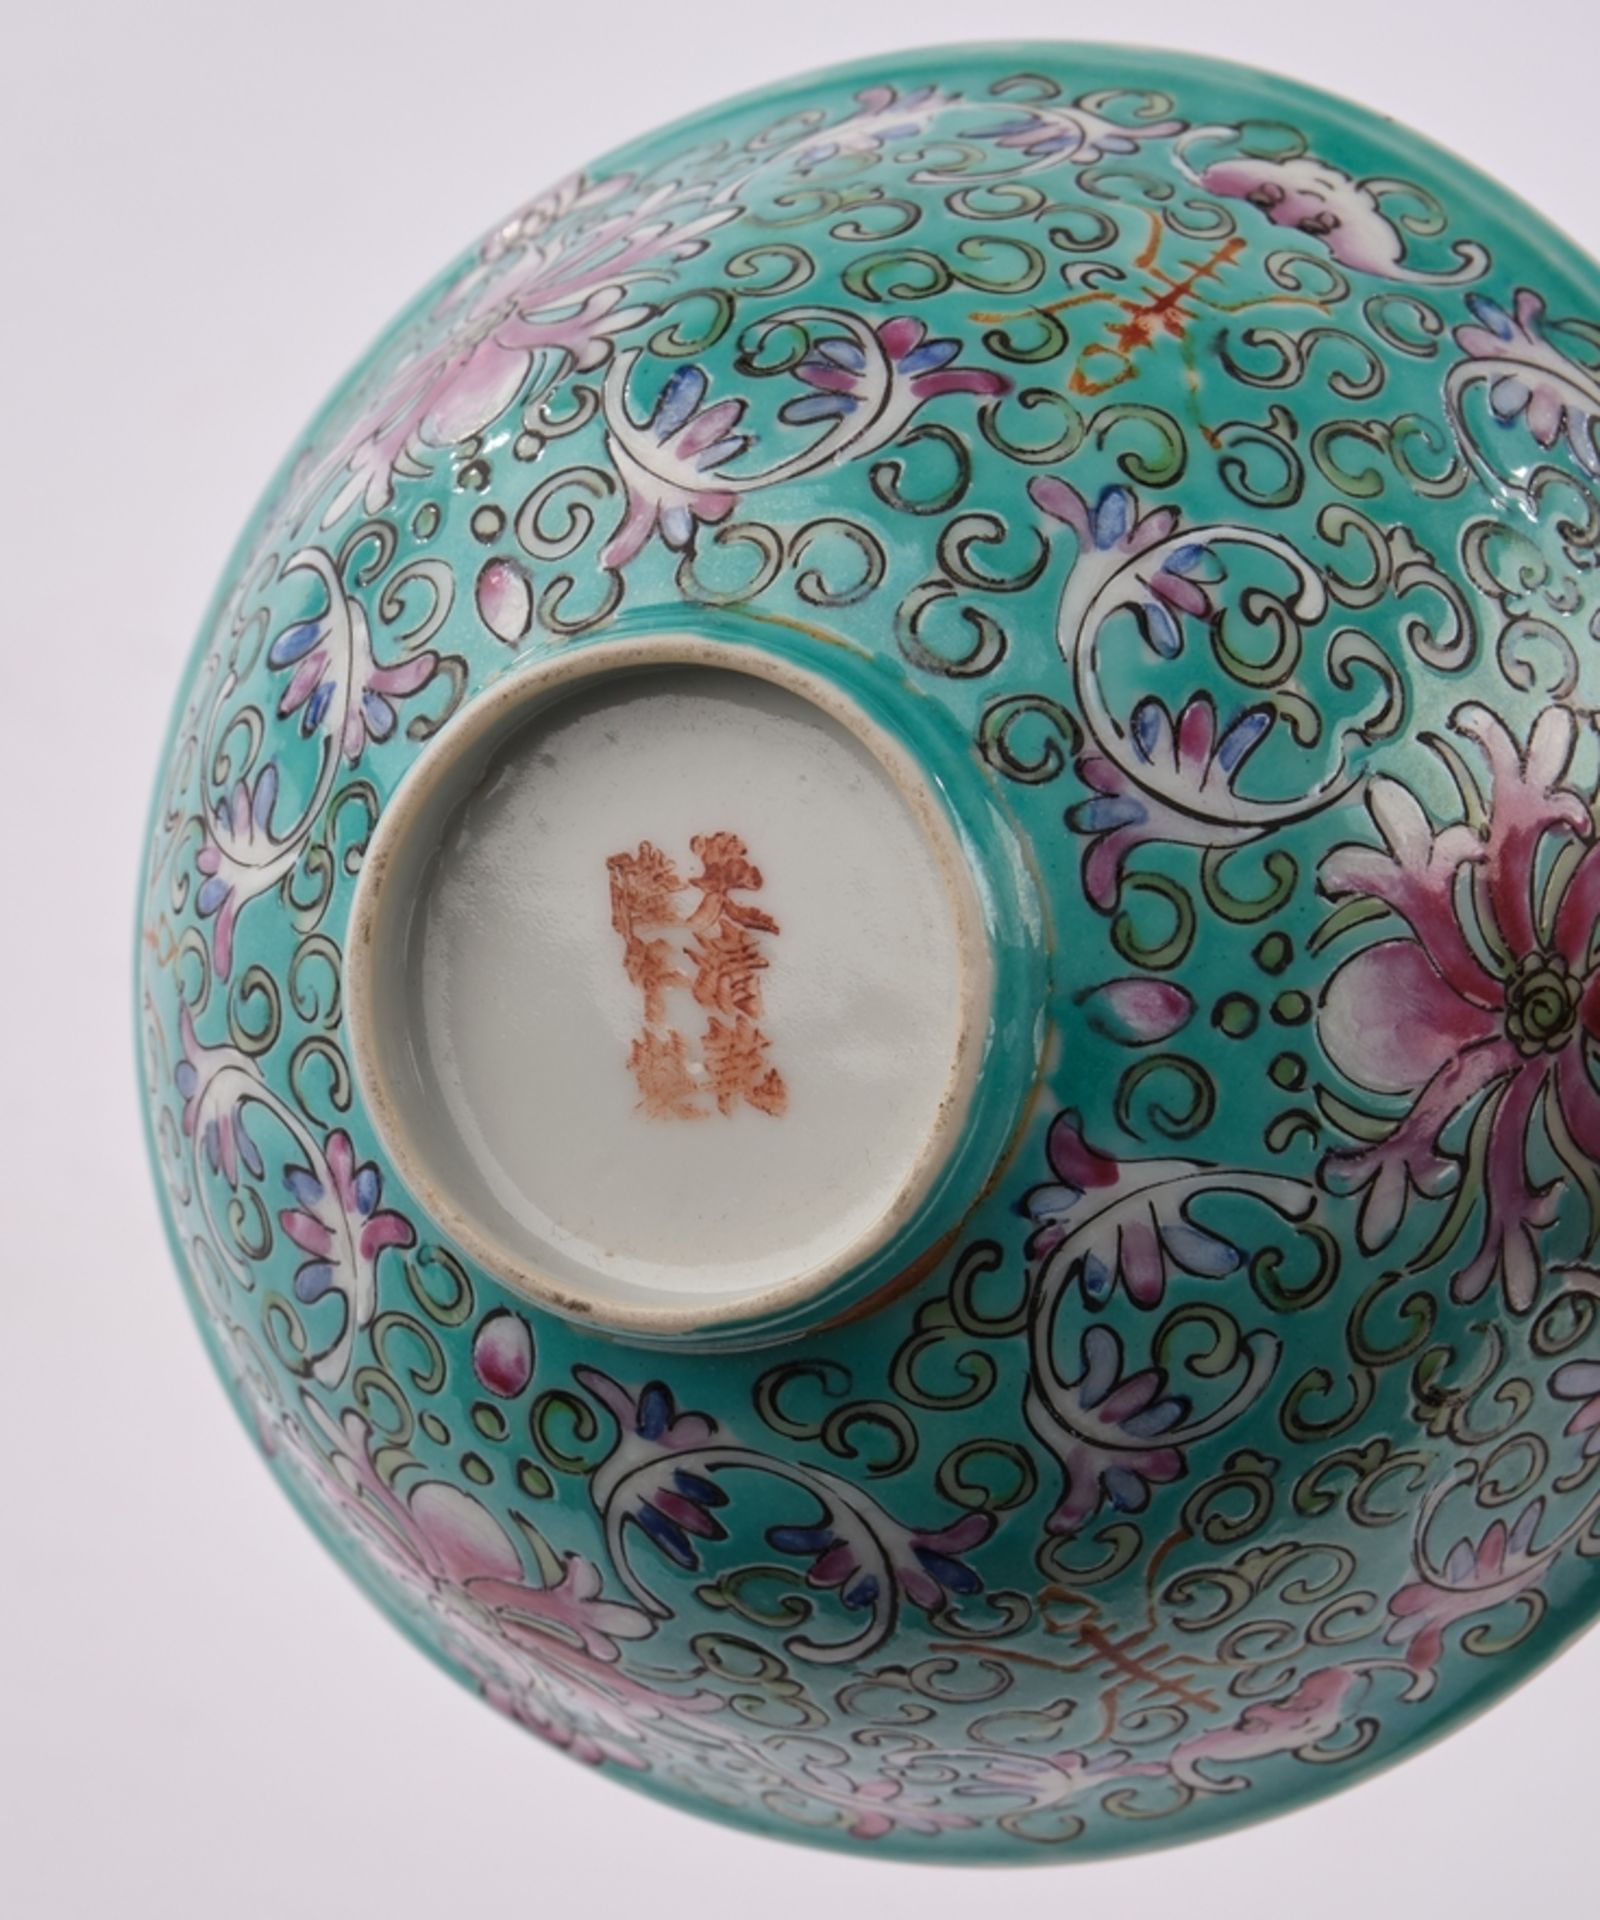 Kumme, China, 20. Jh., Porzellan, famille rose-Dekor auf türkisem Grund, Blütenranken und Shou-Zeic - Bild 2 aus 2